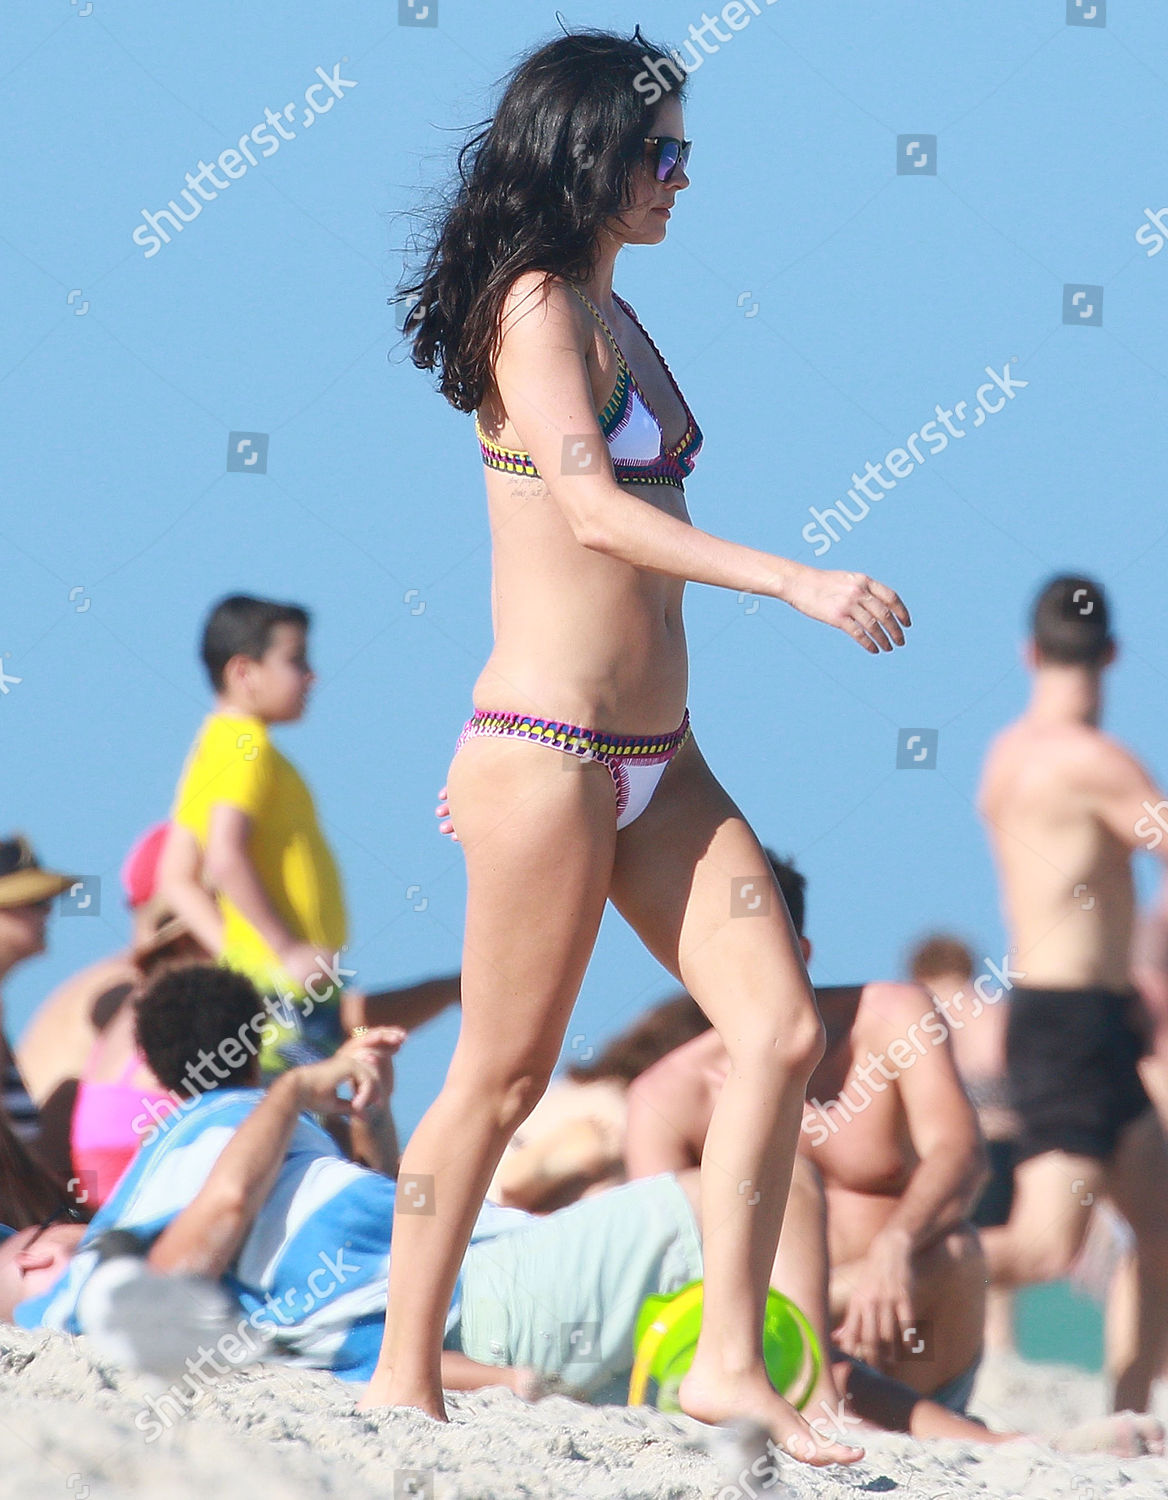 Katie lee bikini